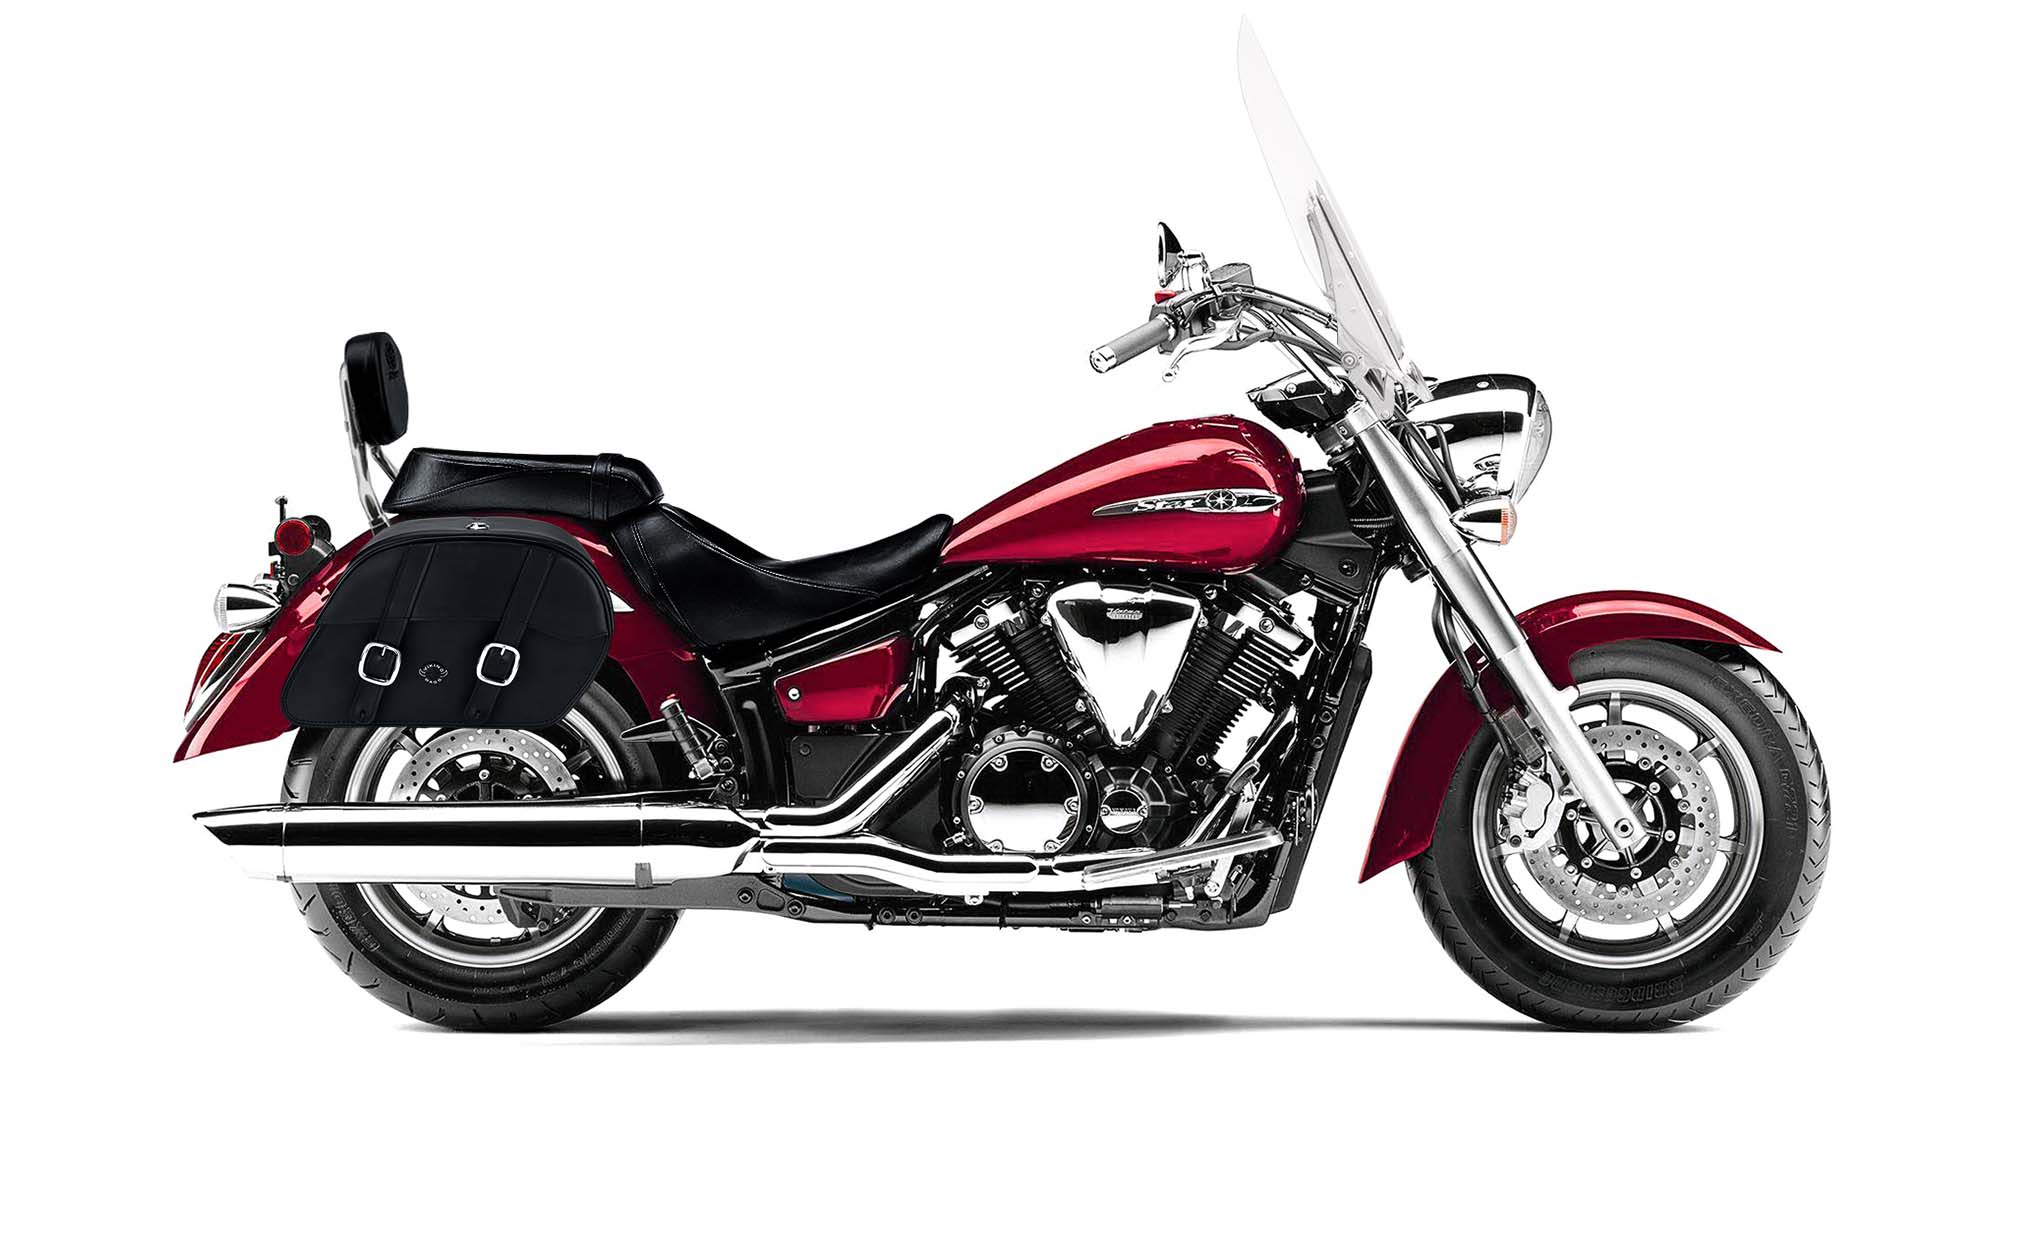 Viking Skarner Medium Lockable Yamaha V Star 1300 Tourer Leather Motorcycle Saddlebags on Bike Photo @expand